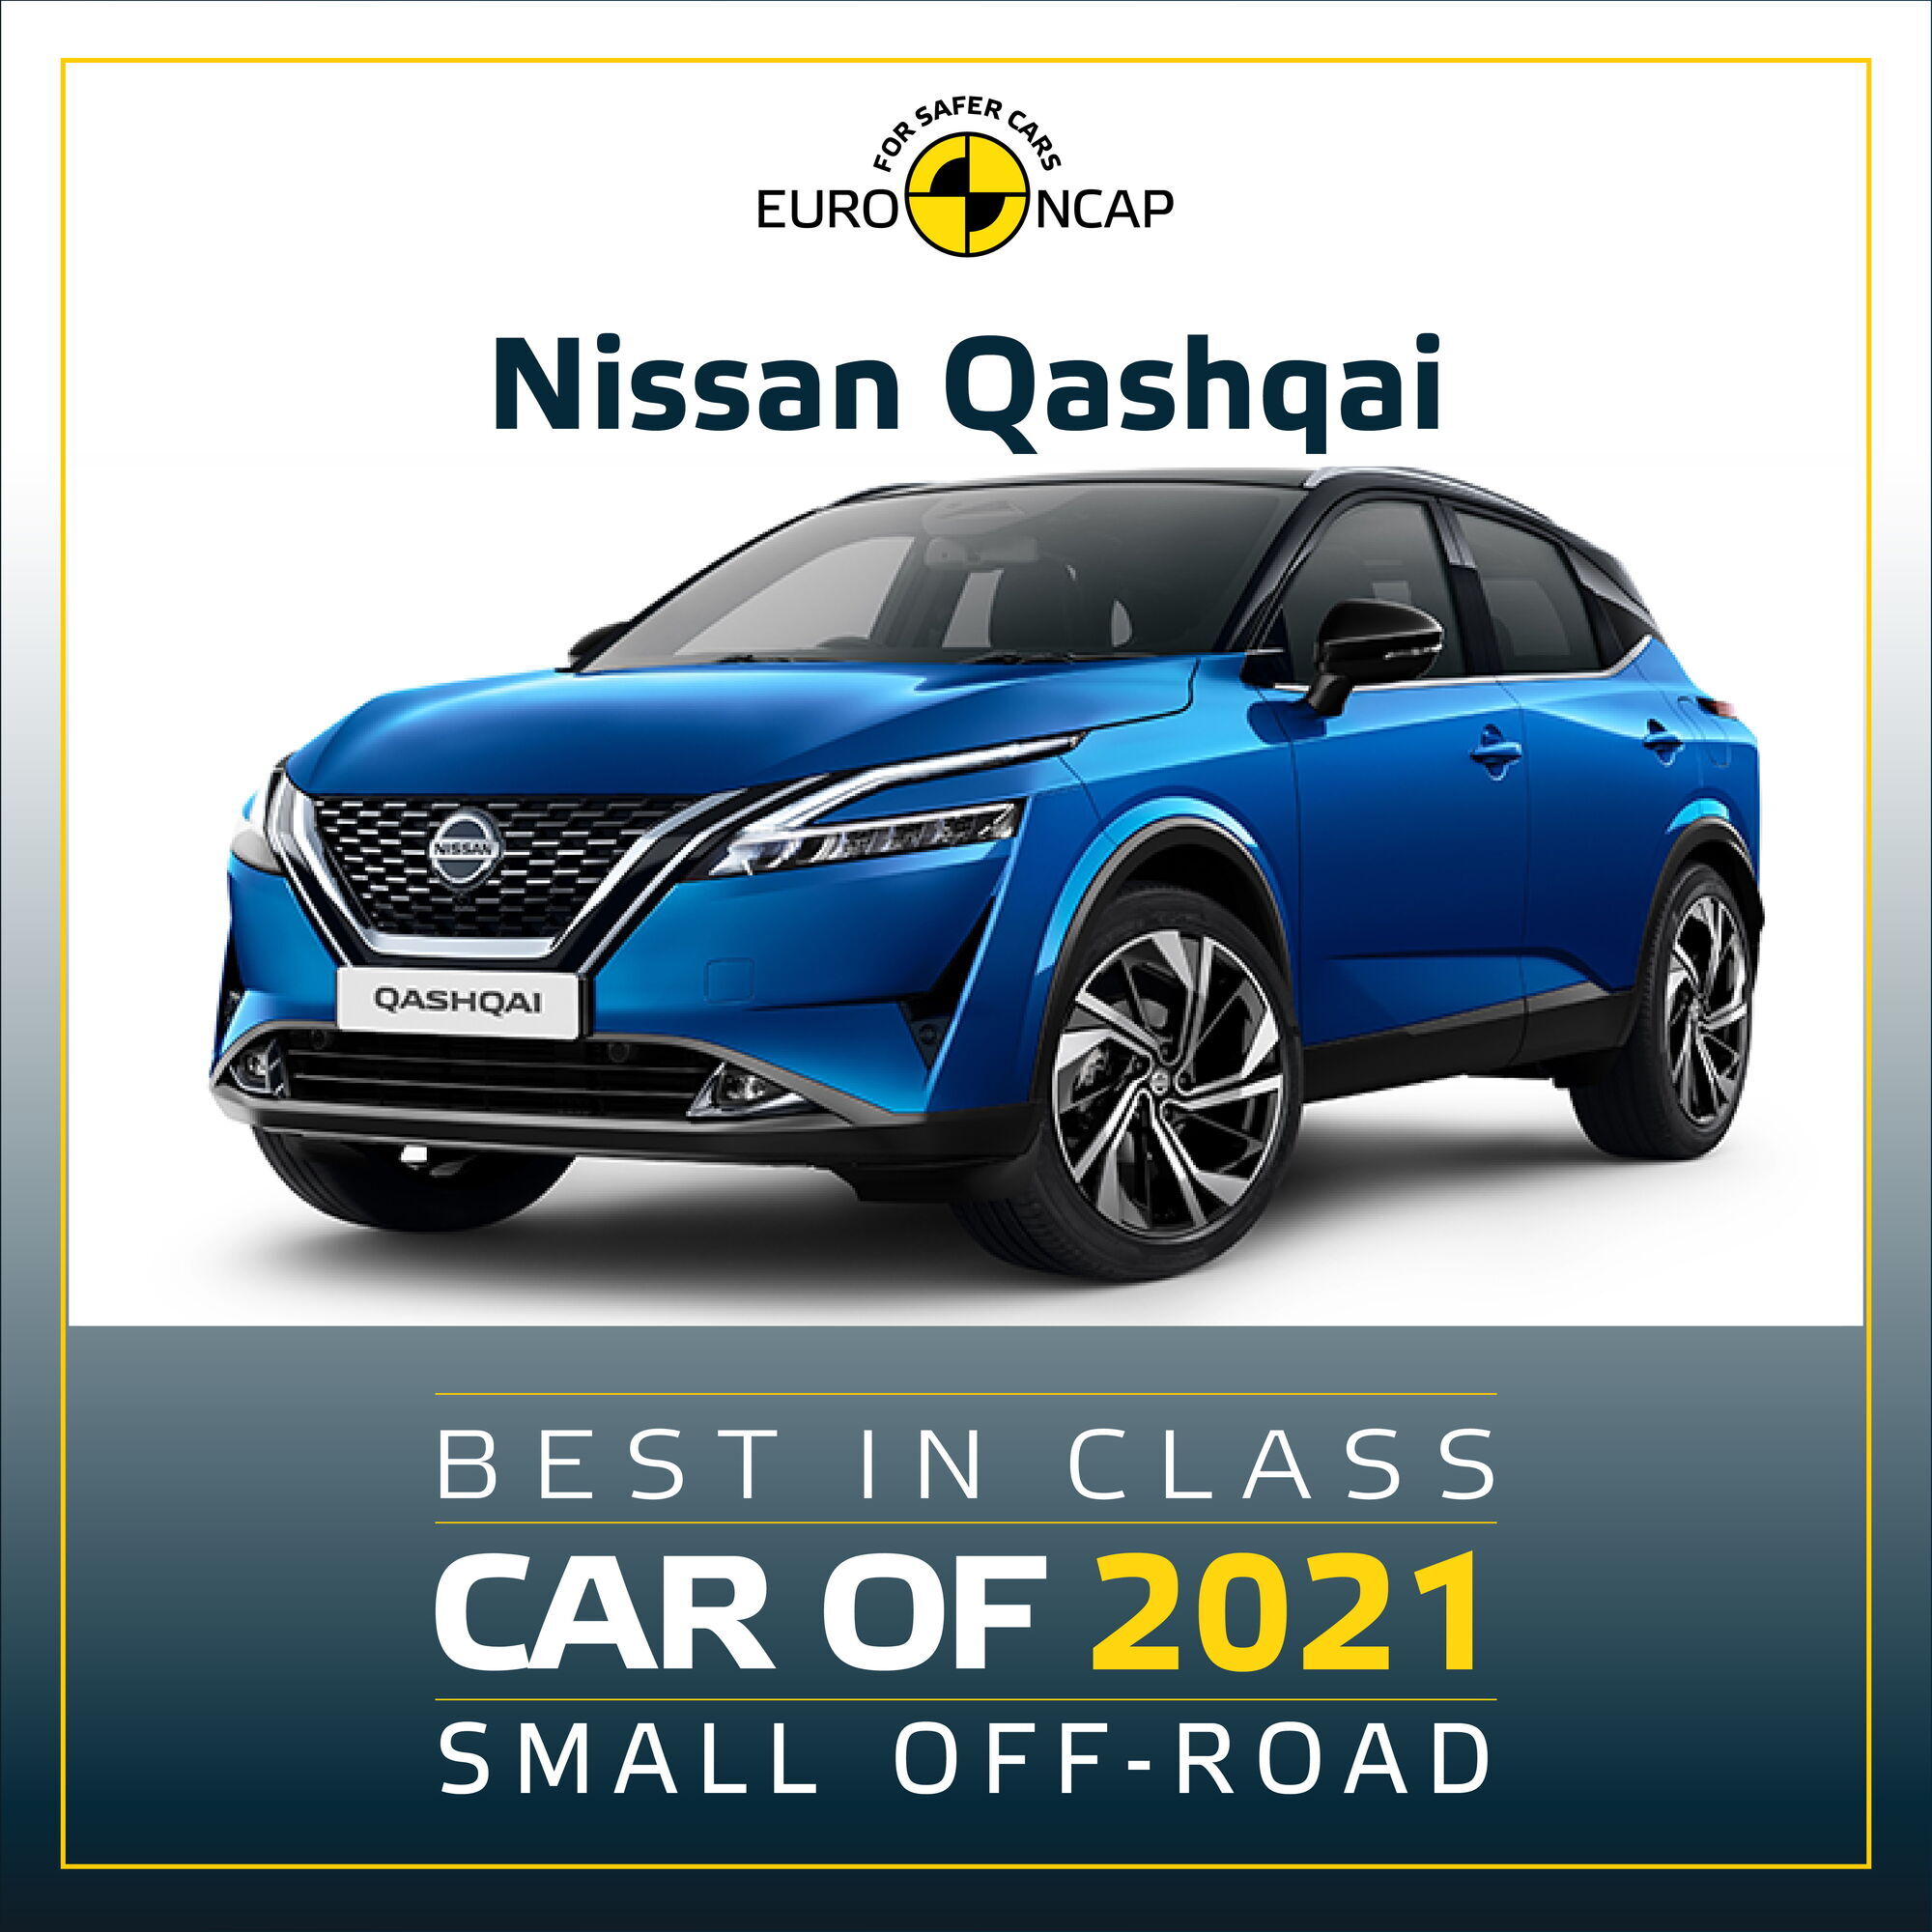 В категории компактных SUV победу одержал Nissan Qashqai нового поколения